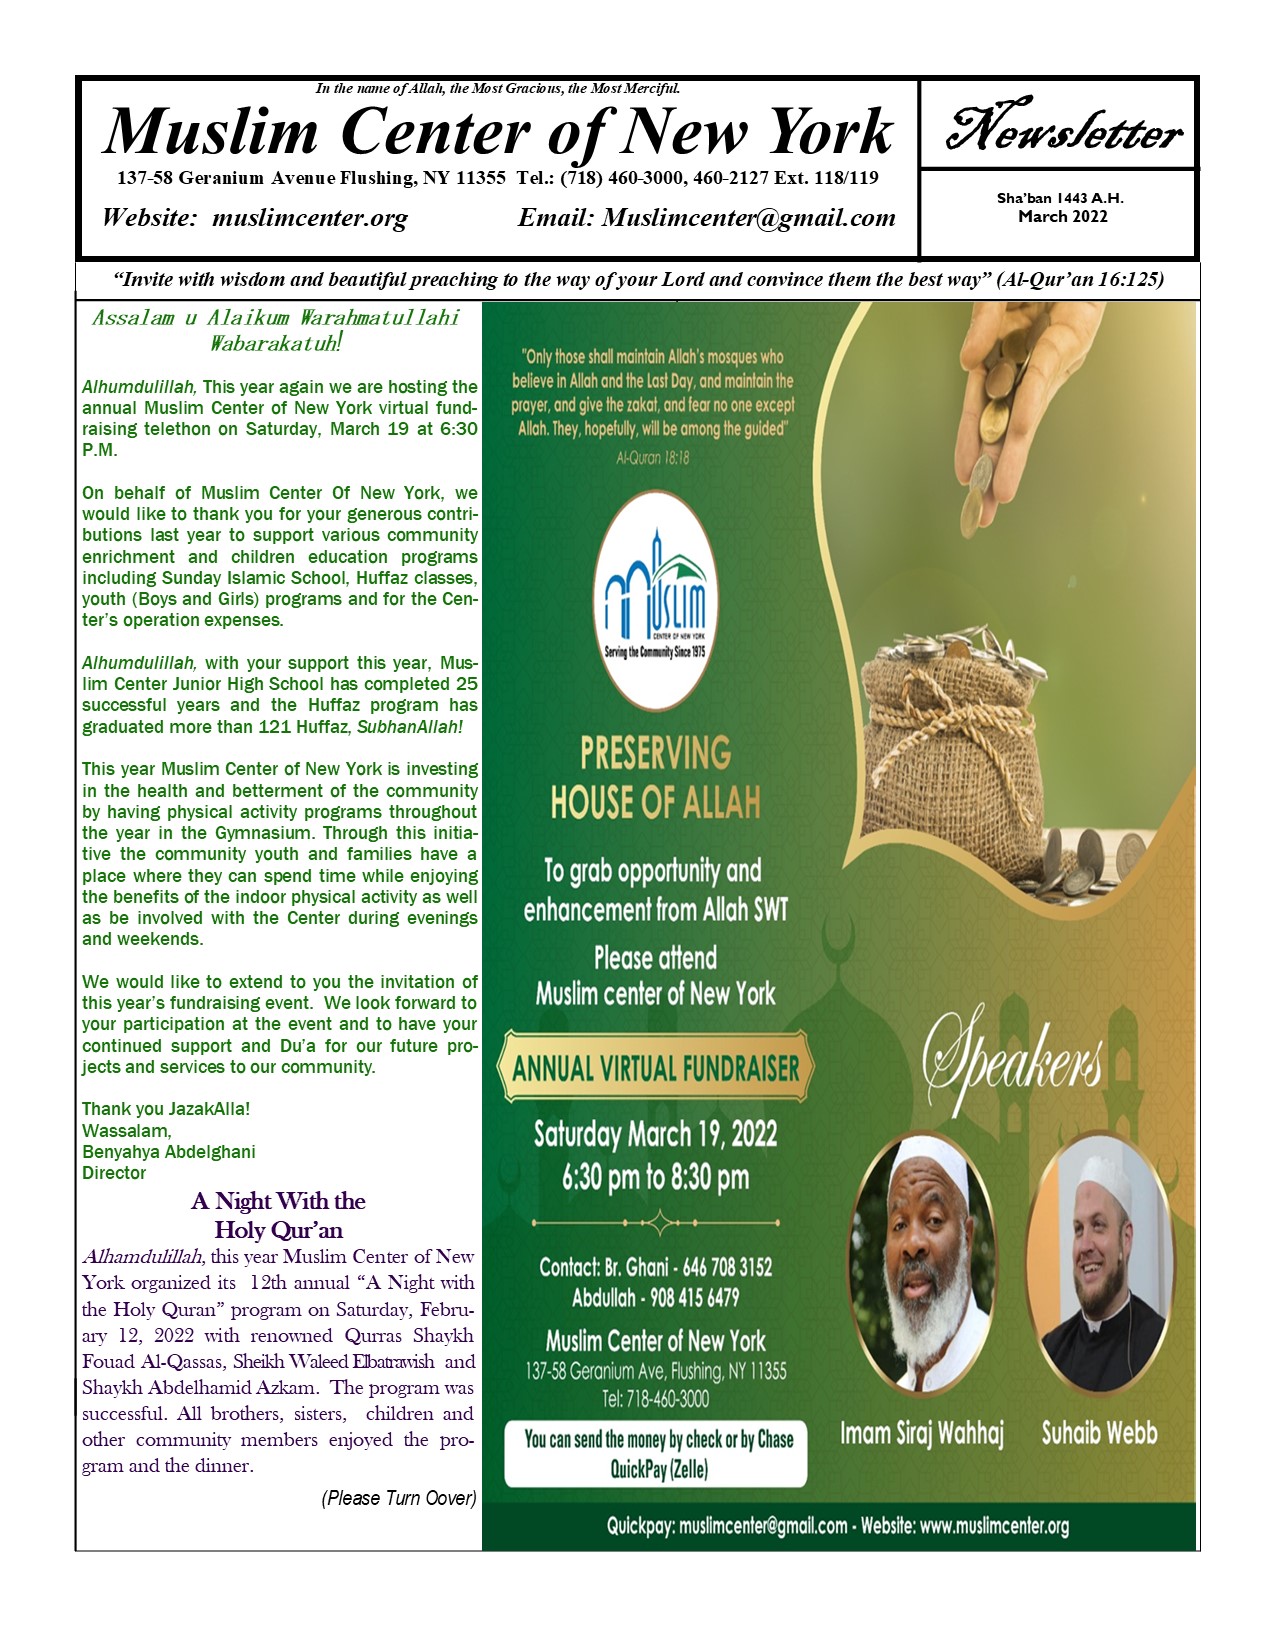 Newsletters  Program in Islamic Law